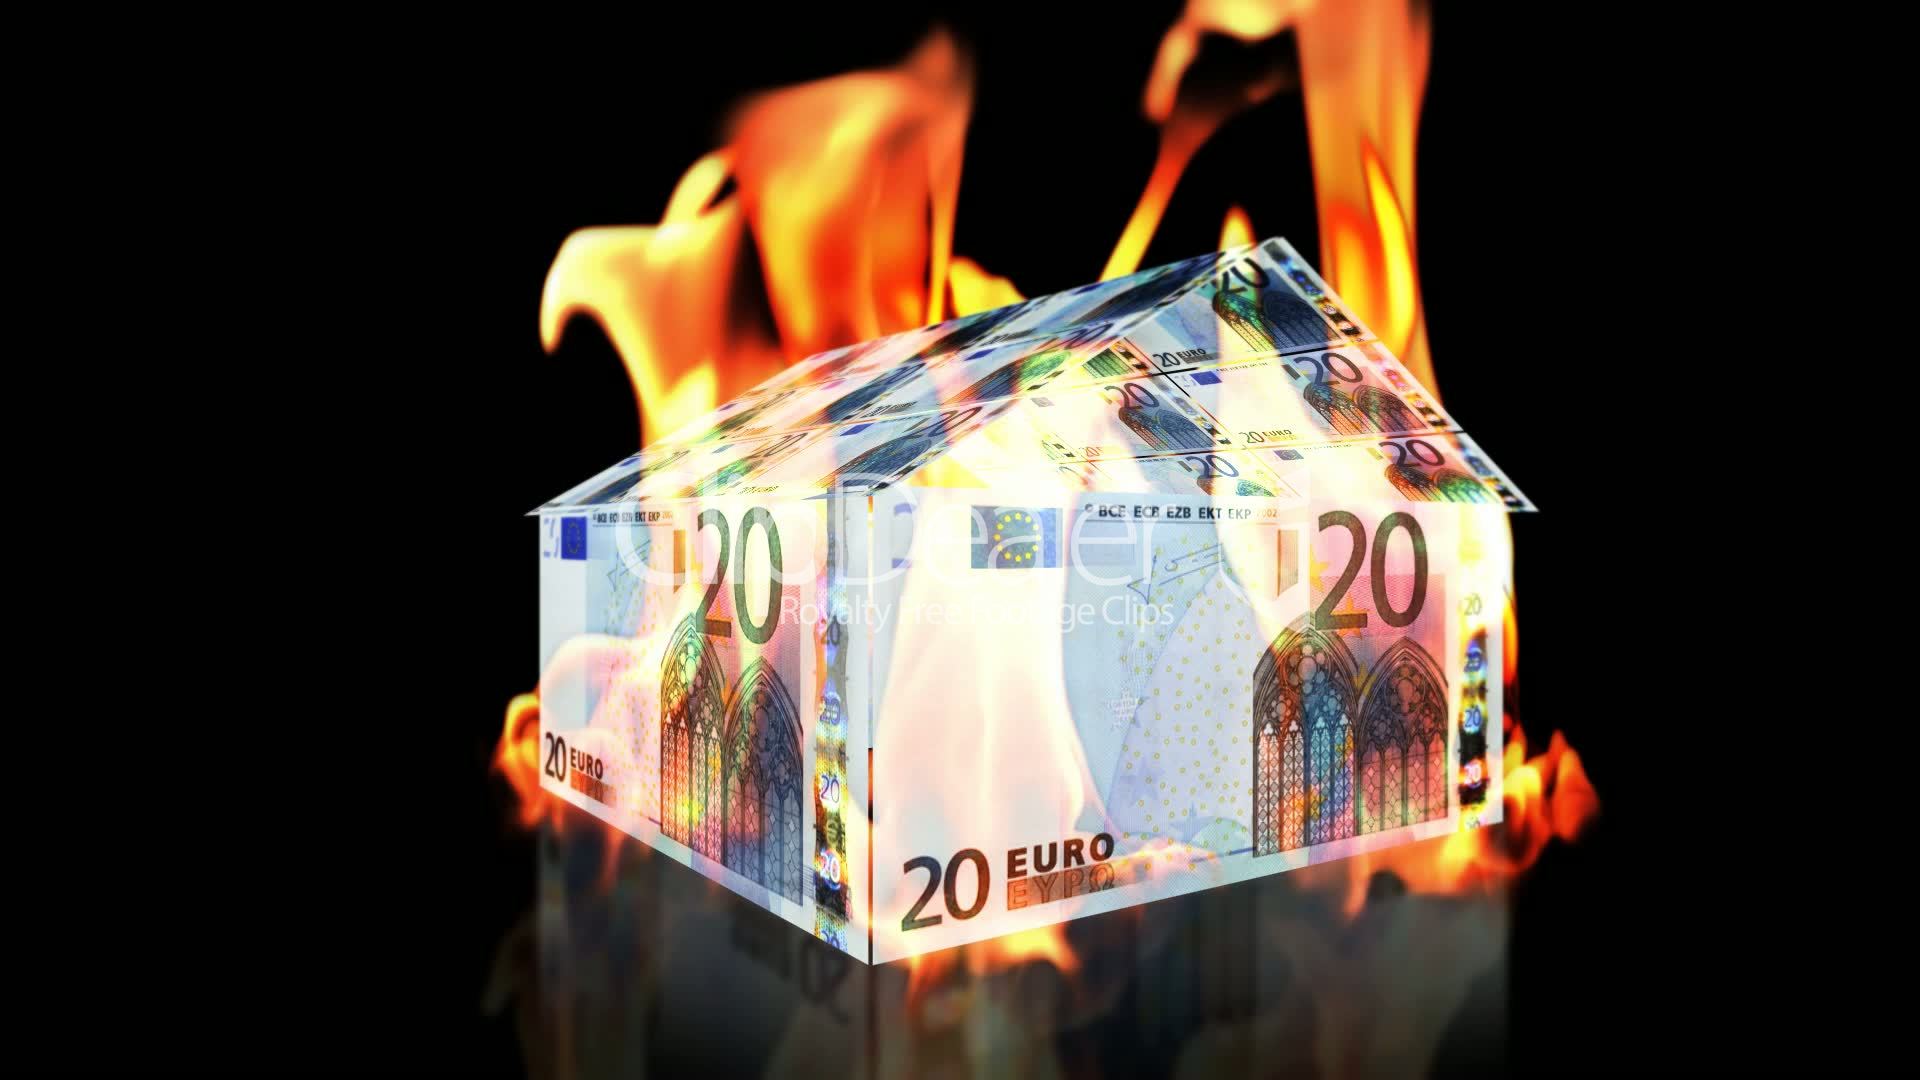 Οι νεοφιλελεύθερες κυβερνήσεις διώχνουν τα λεφτά από την Ευρώπη και διαλύουν την ευρωζώνη